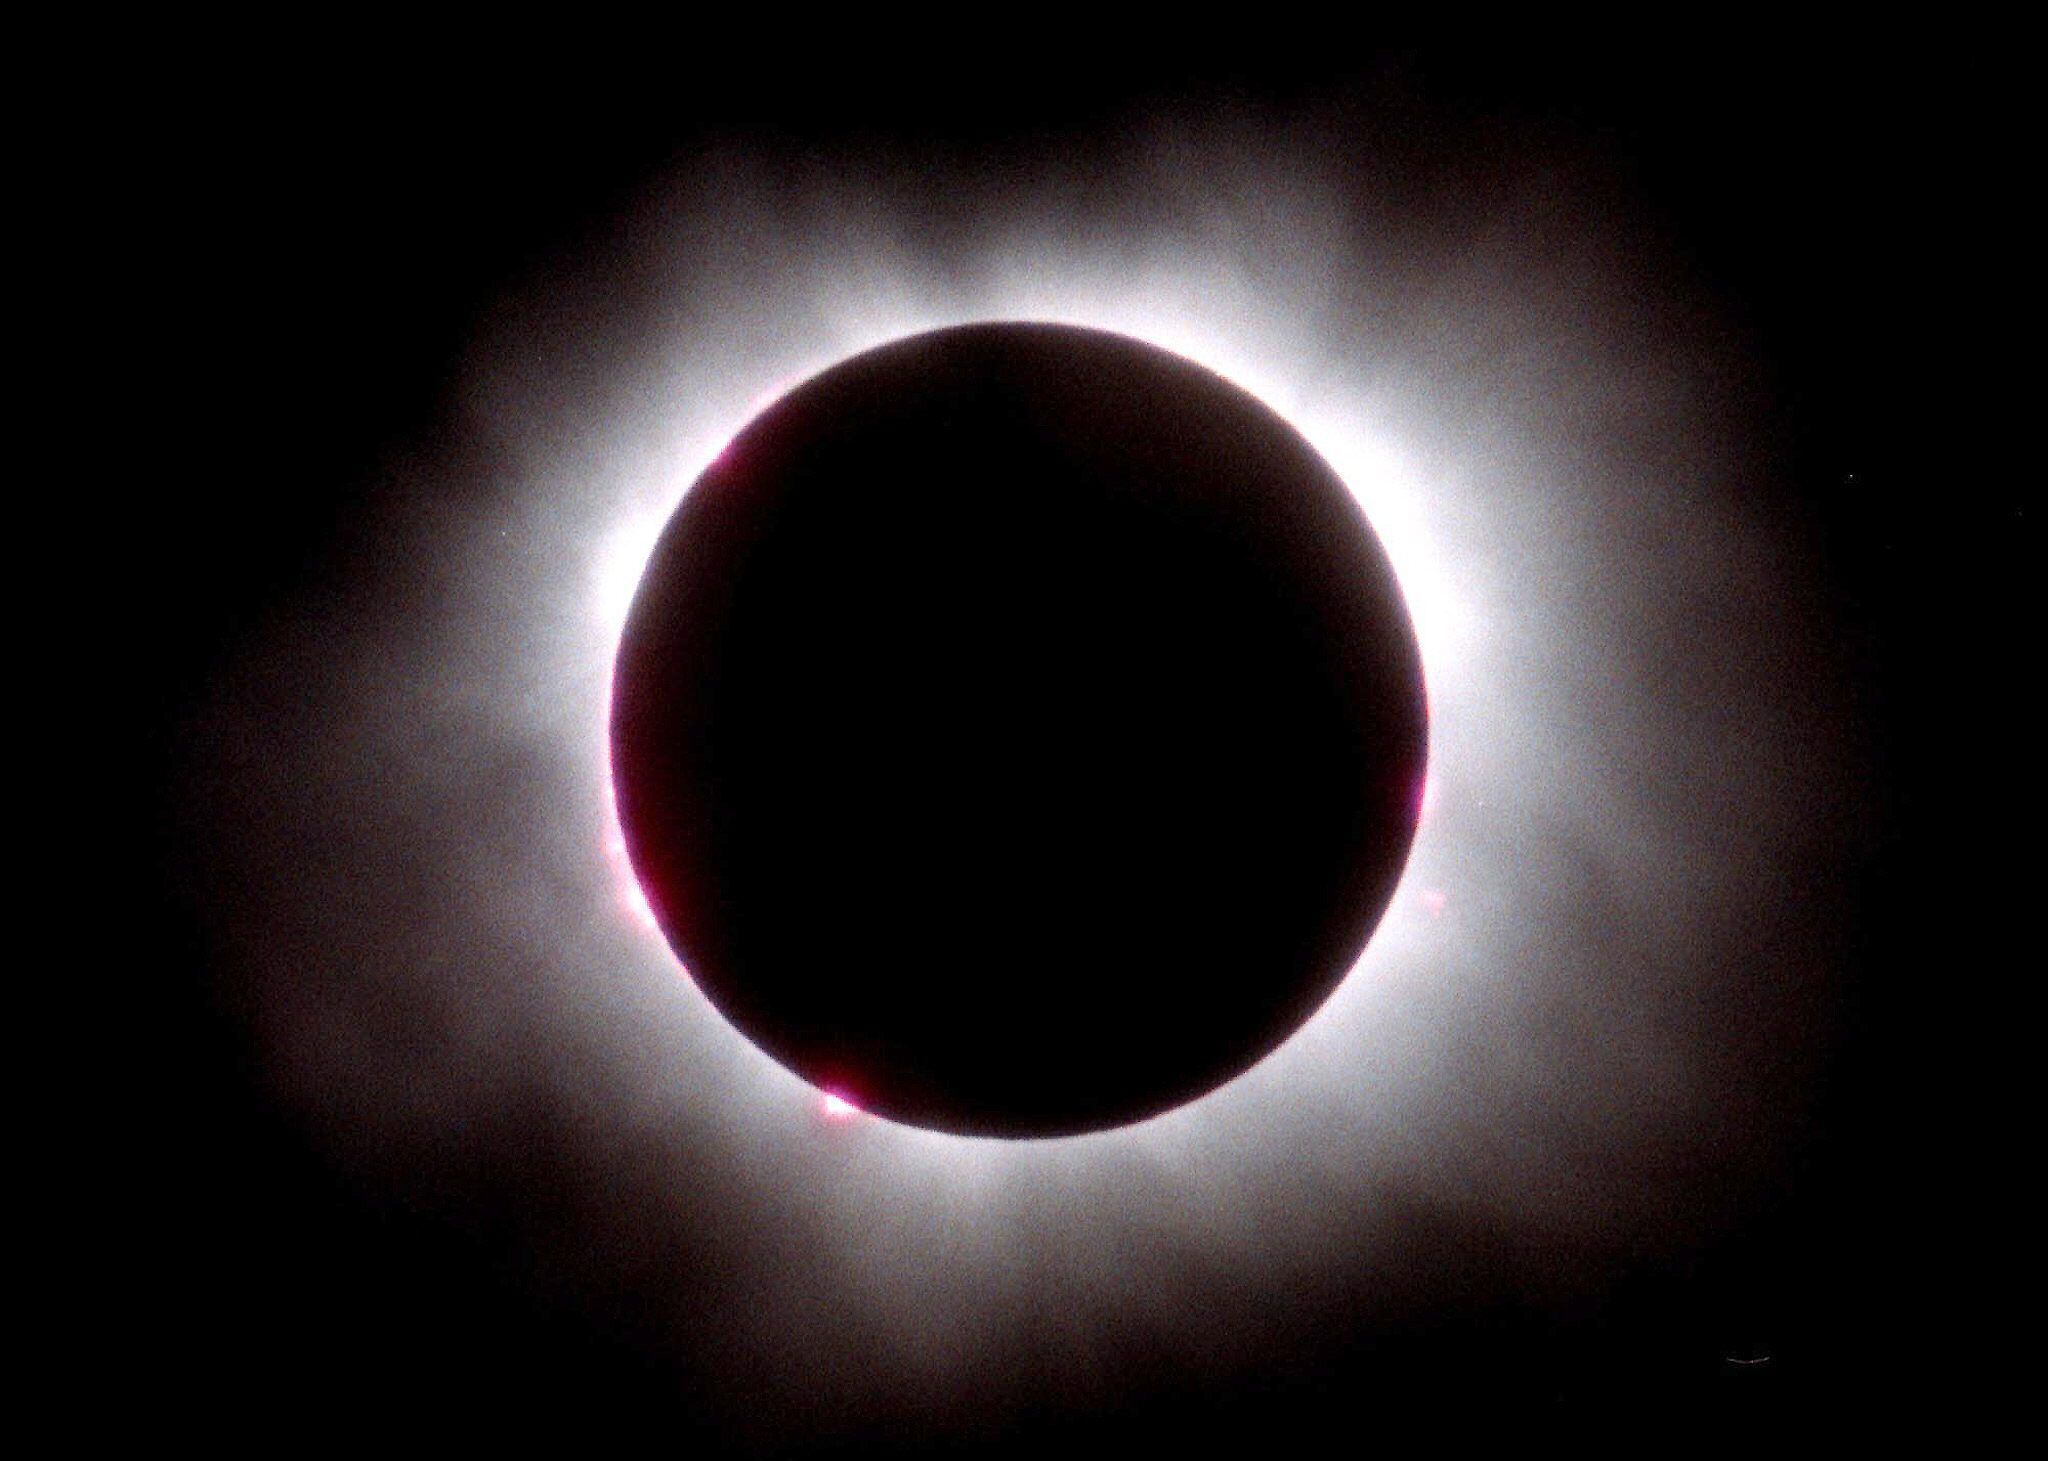 La incertidumbre crece conforme el eclipse solar del 8 de abril se acerca: ¿Por qué la SEP decide no suspender clases en CDMX y Edomex mientras otros estados lo hacen? (EPA/RADU GROZESCU)